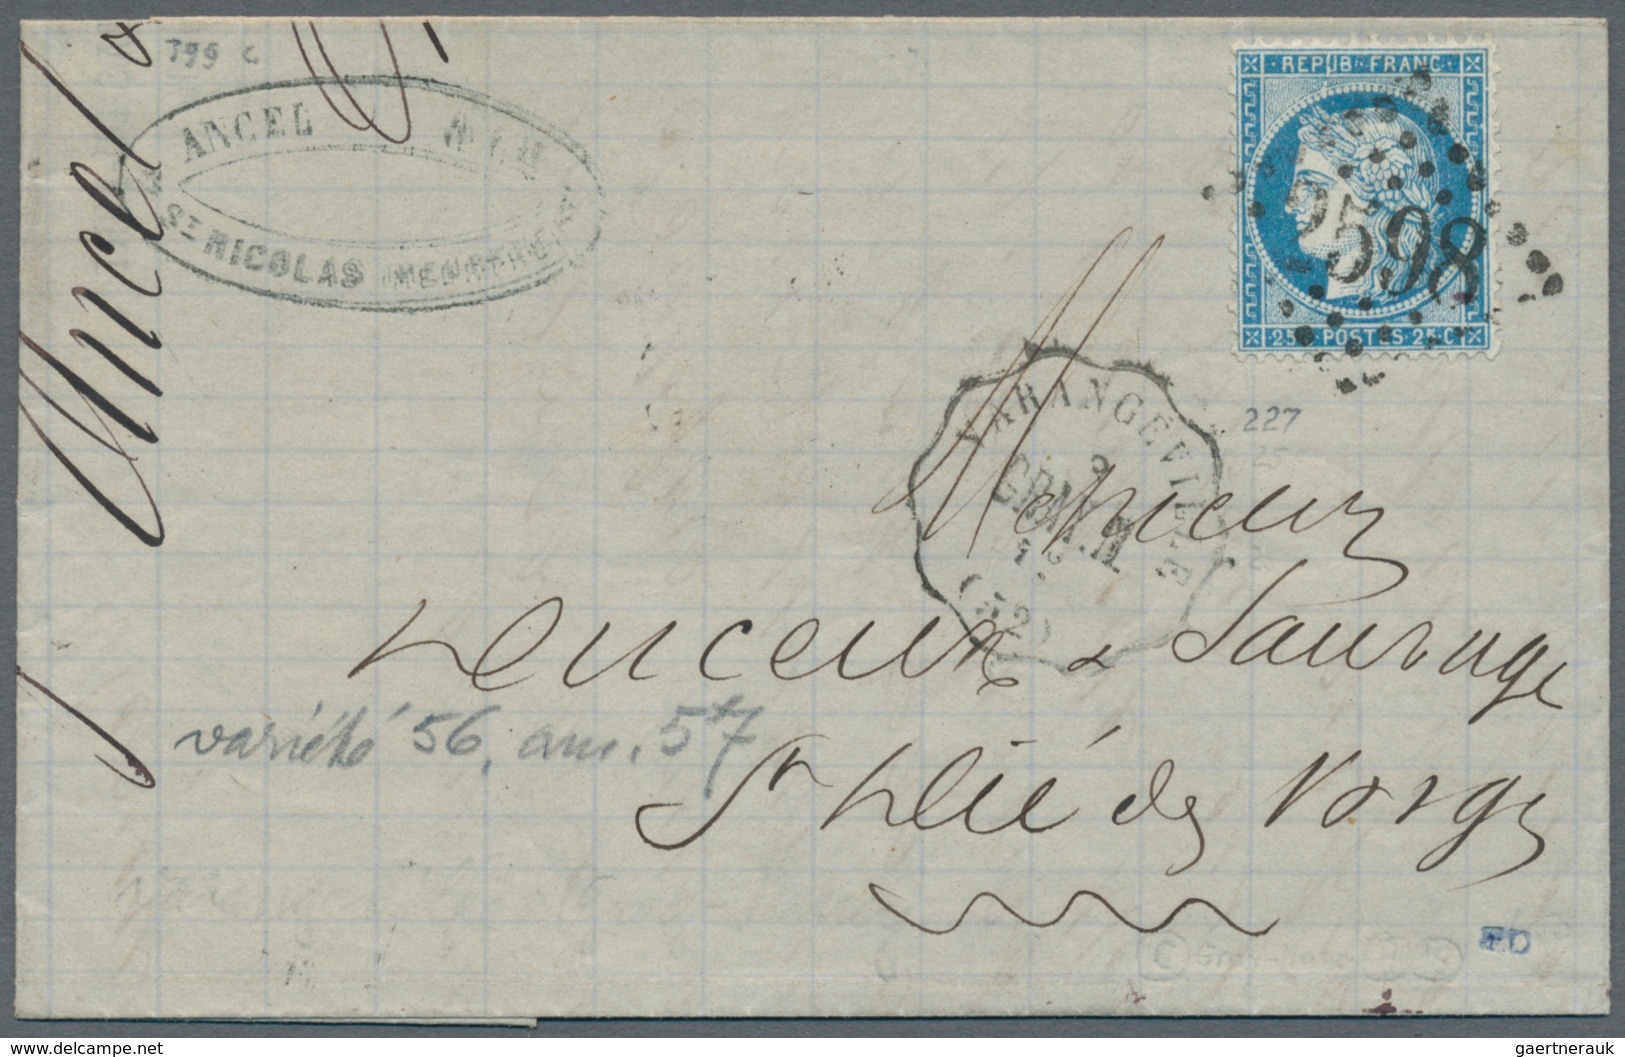 26358 Frankreich: 1798/1876, schöner kleiner Bestand von Vorphilabriefen sowie Ceres und Napoleon-Frankatu